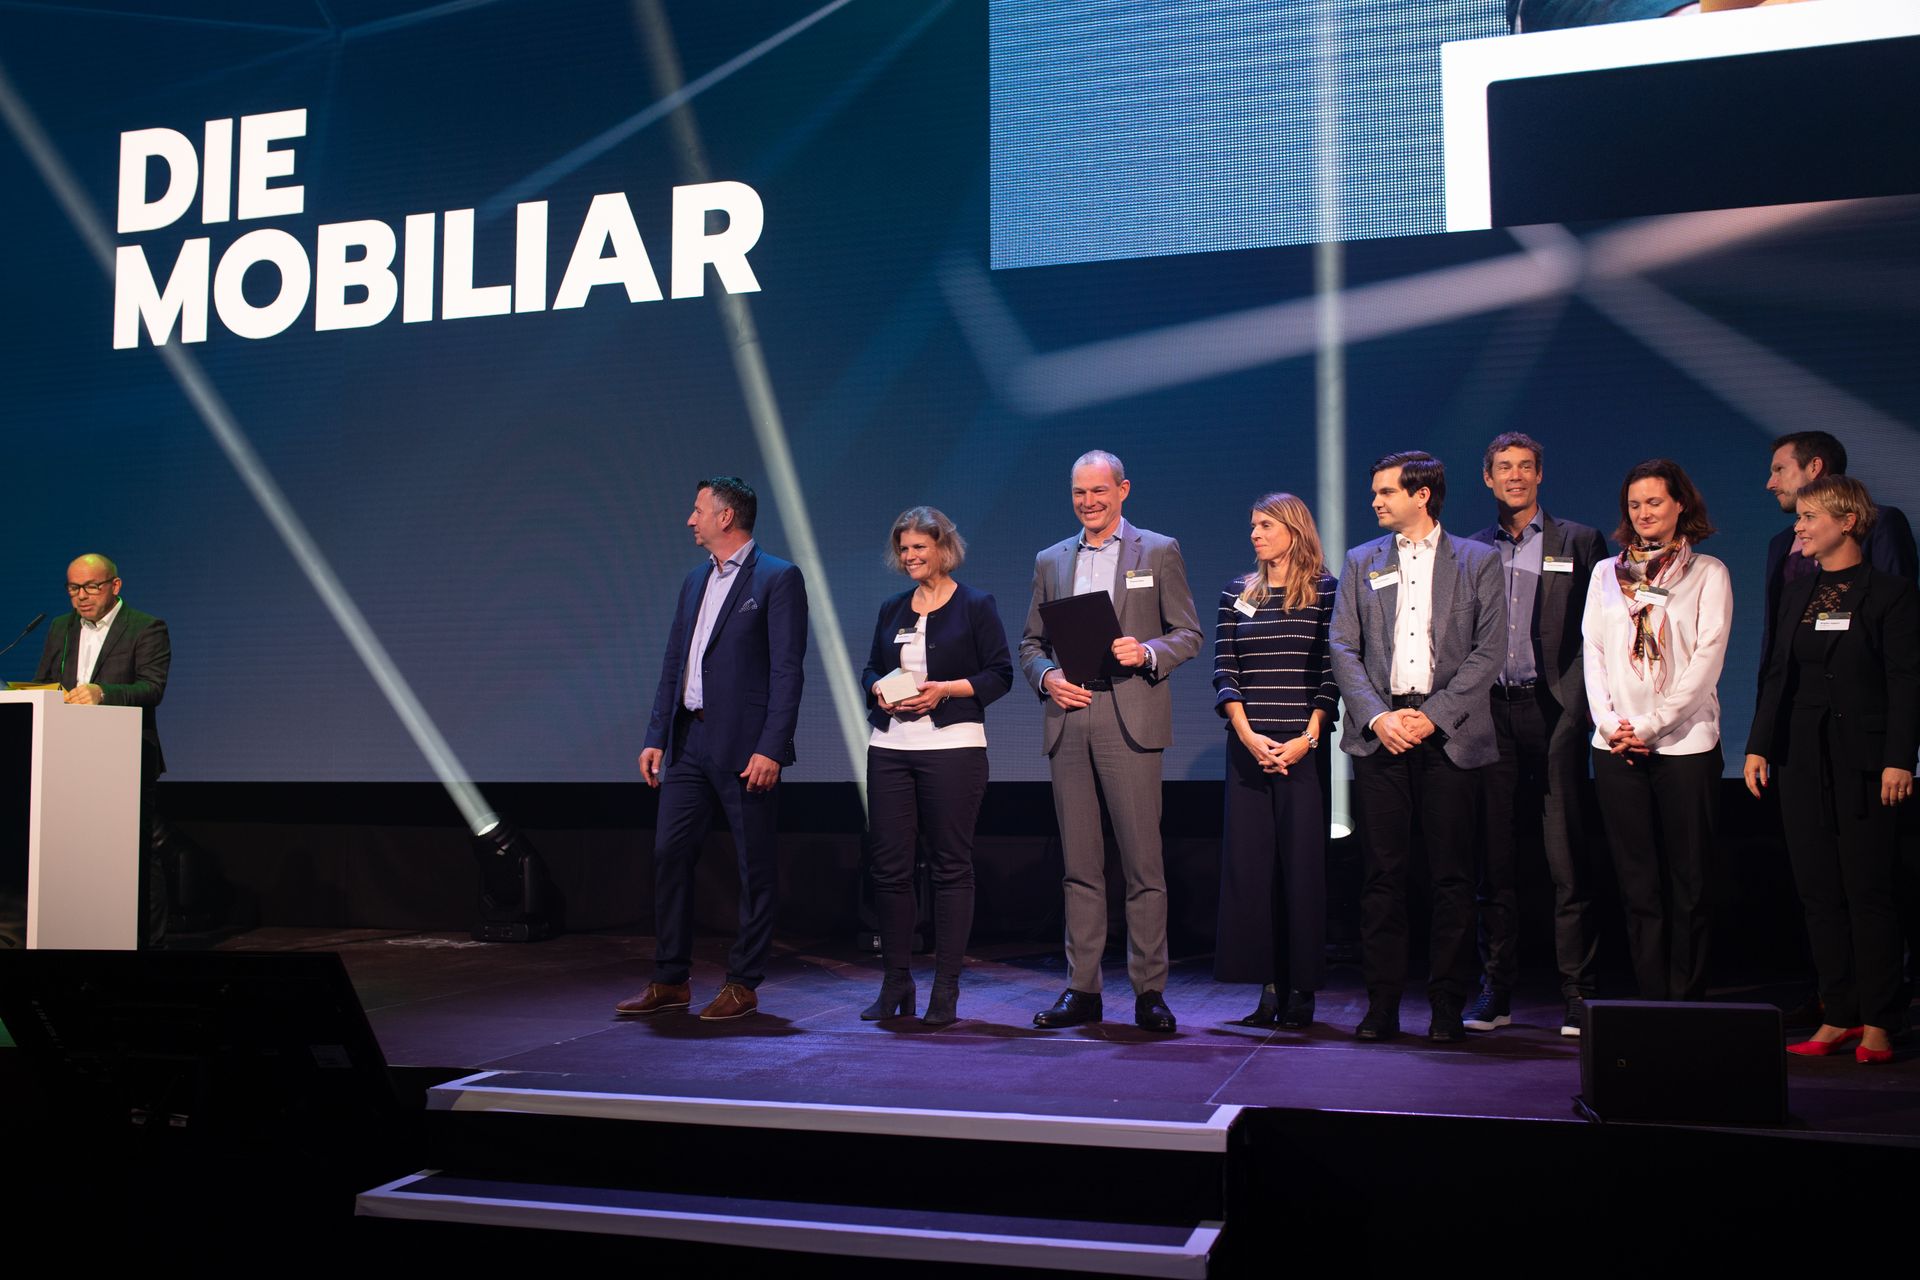 La società "La Mobiliare" si è aggiudicata il premio "Digital Excellence PMI" alla premiazione dei "Digital Economy Award" della Svizzera